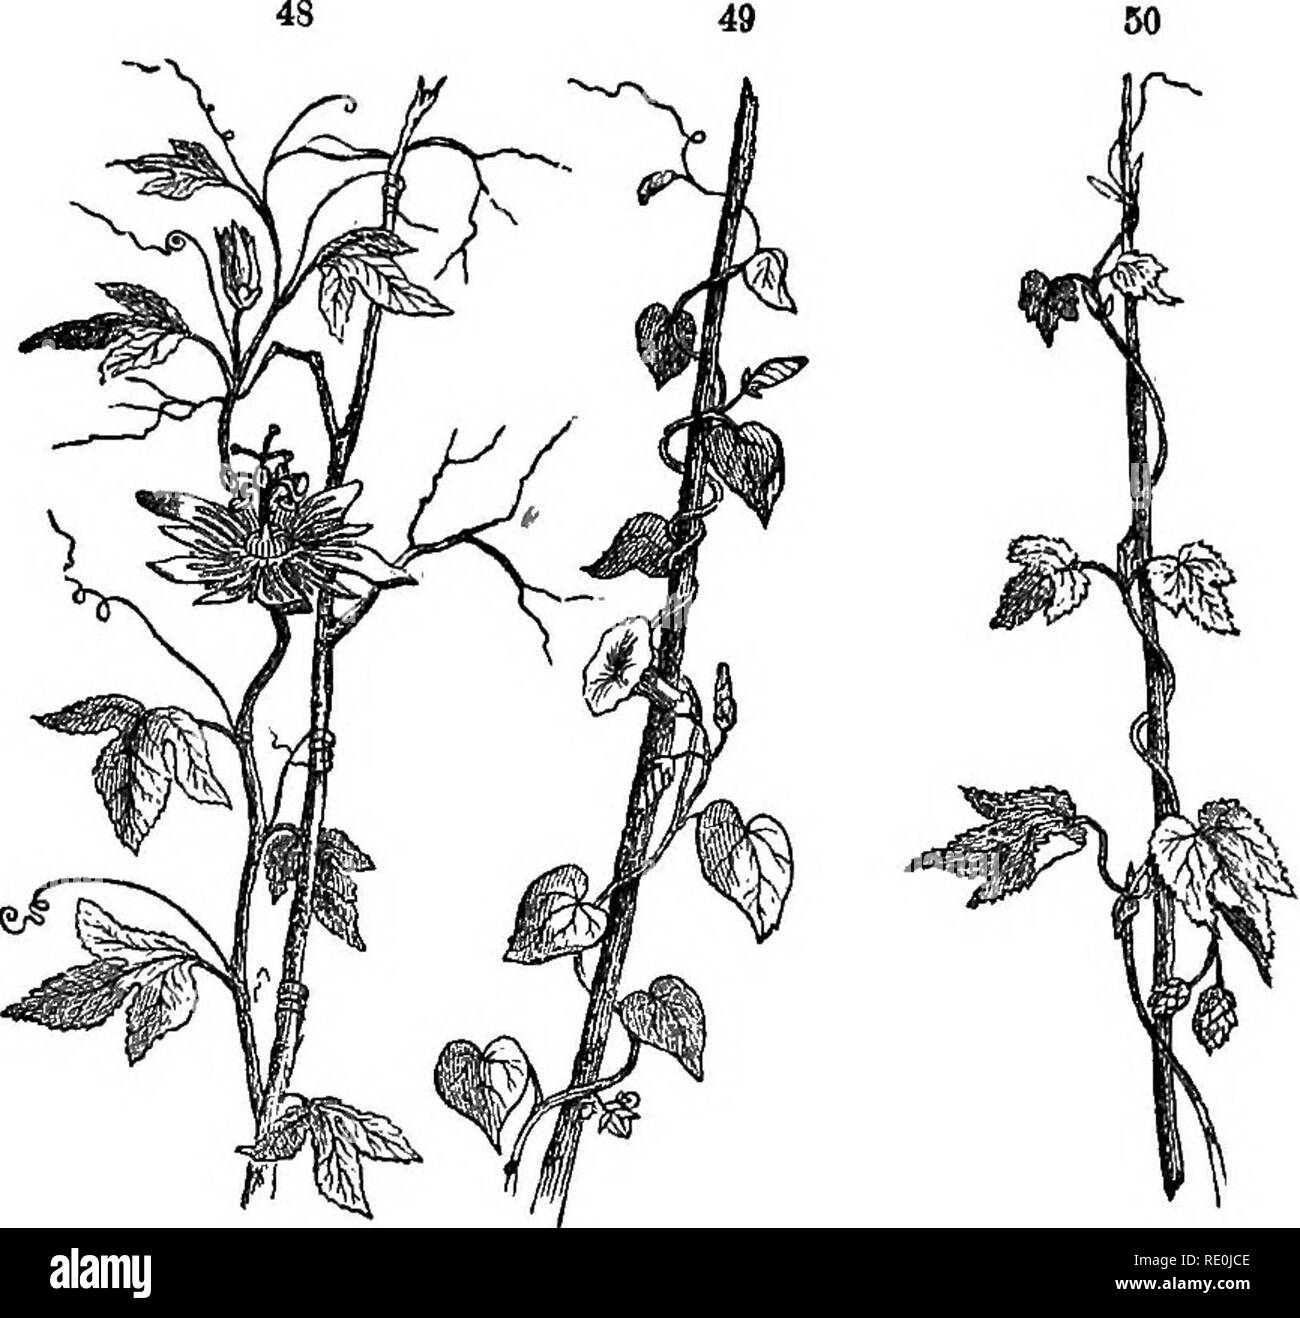 . Class-livre de botanique : être présente de la structure, la physiologie et la classification des végétaux : avec une flore des États-Unis et du Canada . La botanique, la botanique, la botanique. L'AXE DE LA TIGE, ou croissant. 3 ? Vrilles appelée, il monte sur les arbres et autres objets d'une grande hauteur, comme le raisin, gourd, et d'autres plantes grimpantes.. La vigne. 48, Passion-fleur (Passiflora Intca) escalade en vrilles. 49, matin-gloire, twining de droite à gauche. 50, hop, twining de gauche à droite. 179. Le TWiNiNa VDSfB, ayant également une longueur très disproportioned à son compteur, prend en charge elle-même diar sur d'autres plantes ou obje Banque D'Images